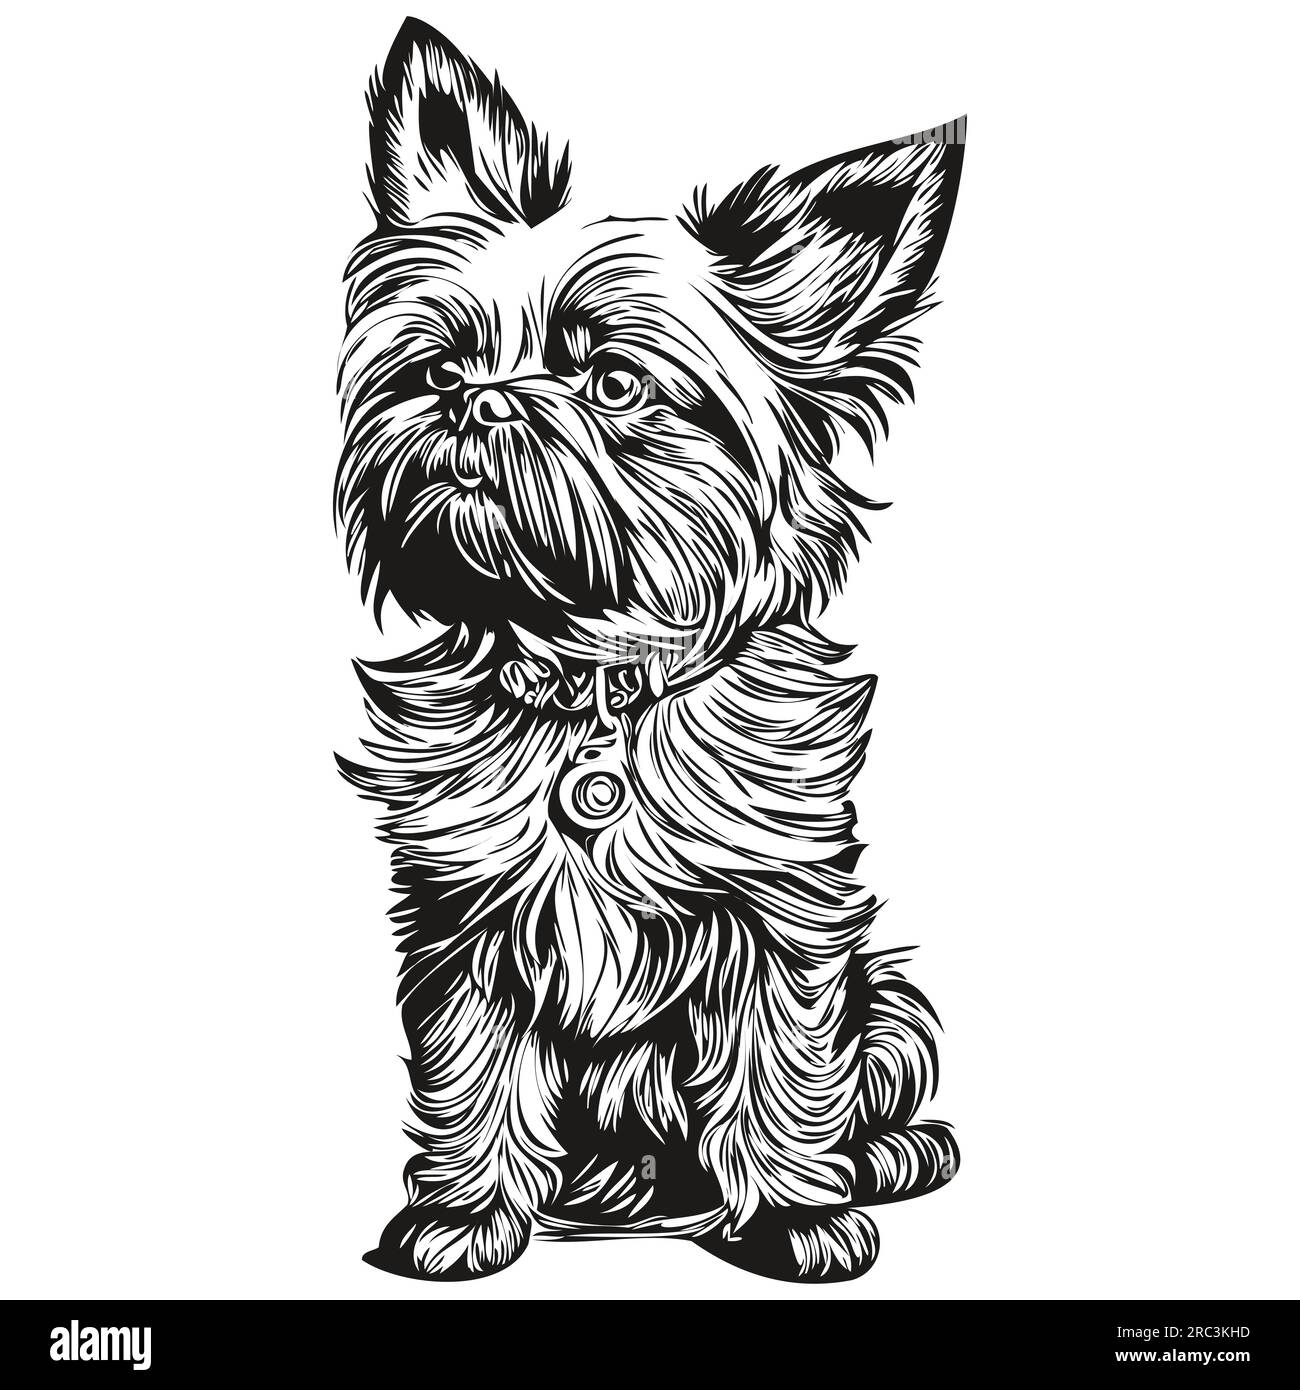 Affenpinscher chien dessin au crayon contour illustration, caractère noir sur fond blanc silhouette réaliste d'animal de compagnie Illustration de Vecteur